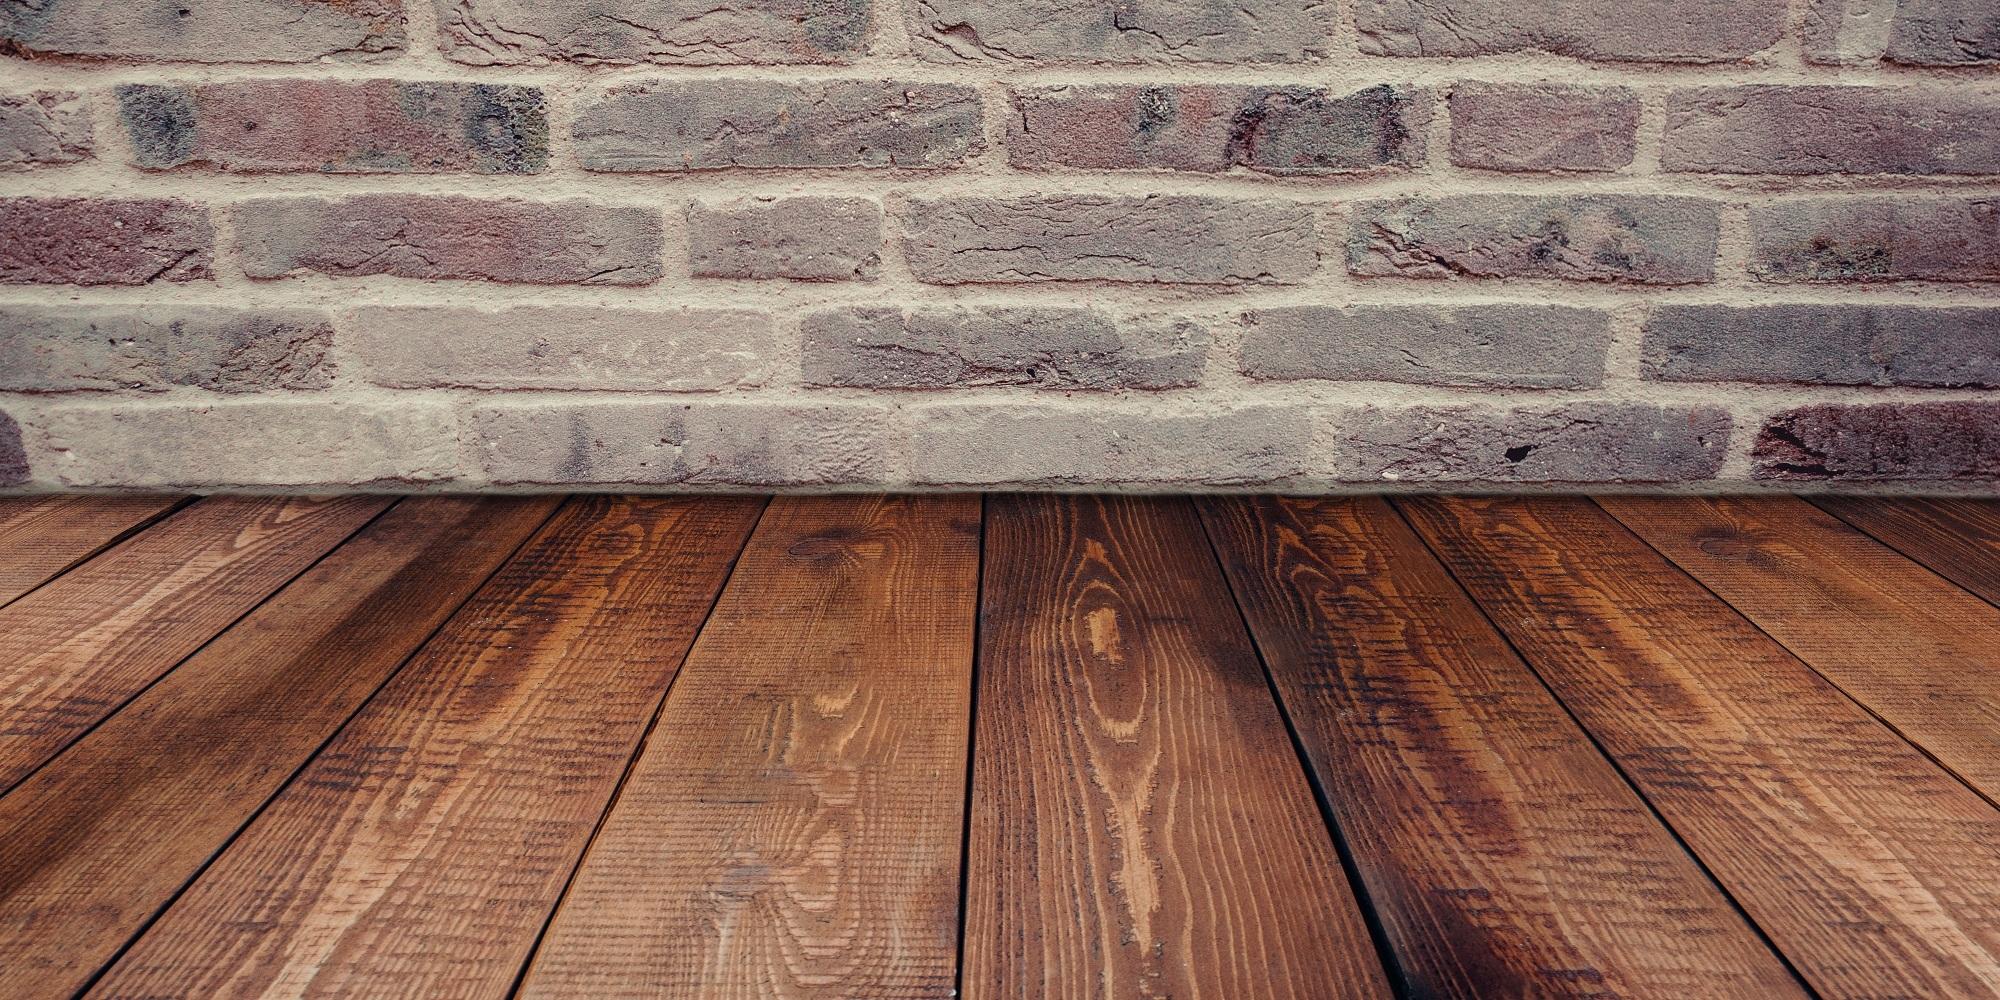 3 Ways to Improve Your Home's Floor